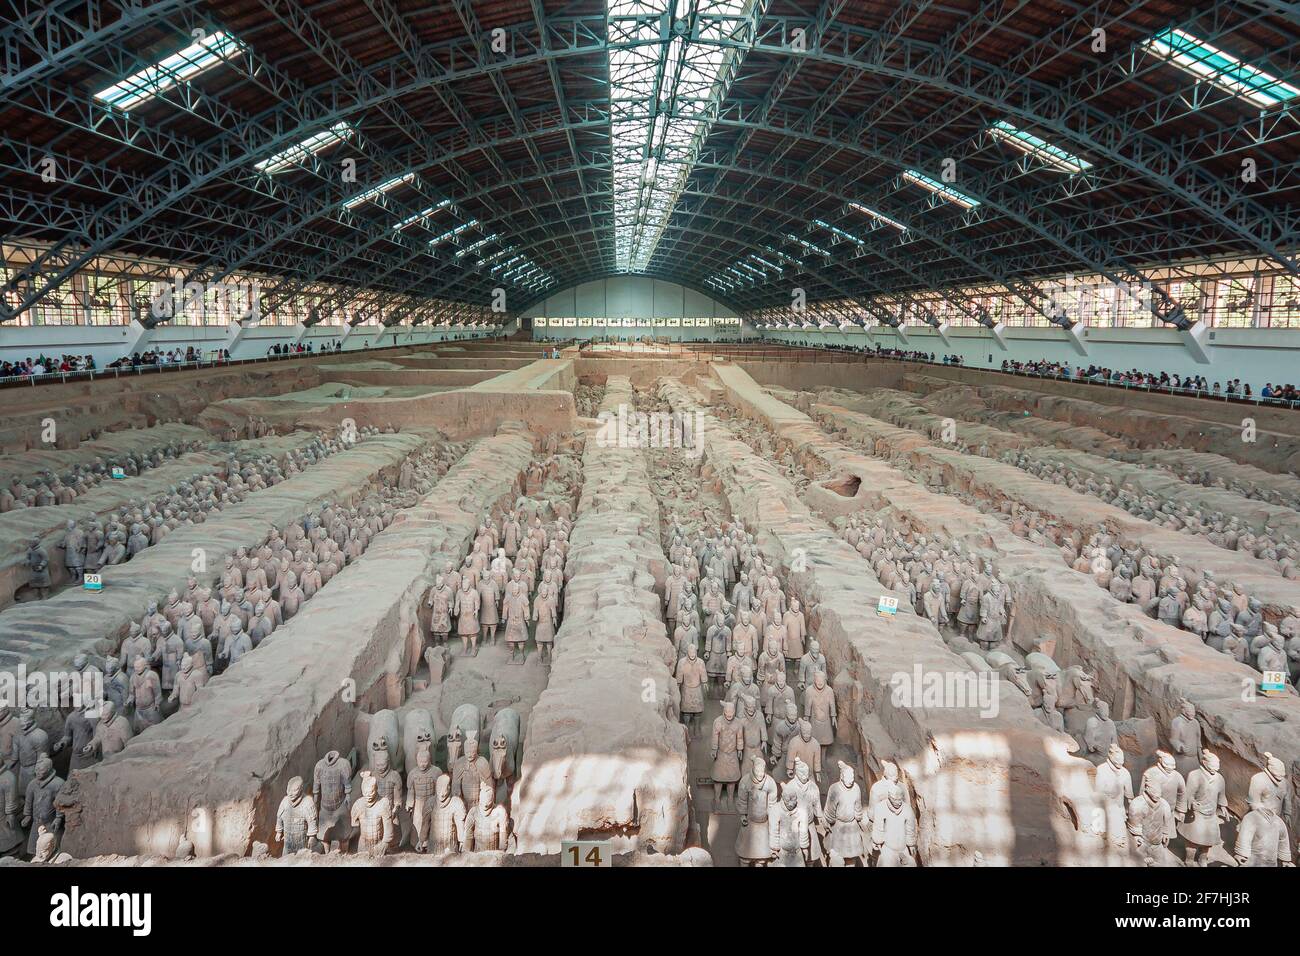 Xian, Cina - 1 maggio 2010: Esercito di terracotta di Qin Shi Huang. Enorme tetto di sala su scavi di terra beige con centinaia di soldati e statue di cavalli. Foto Stock